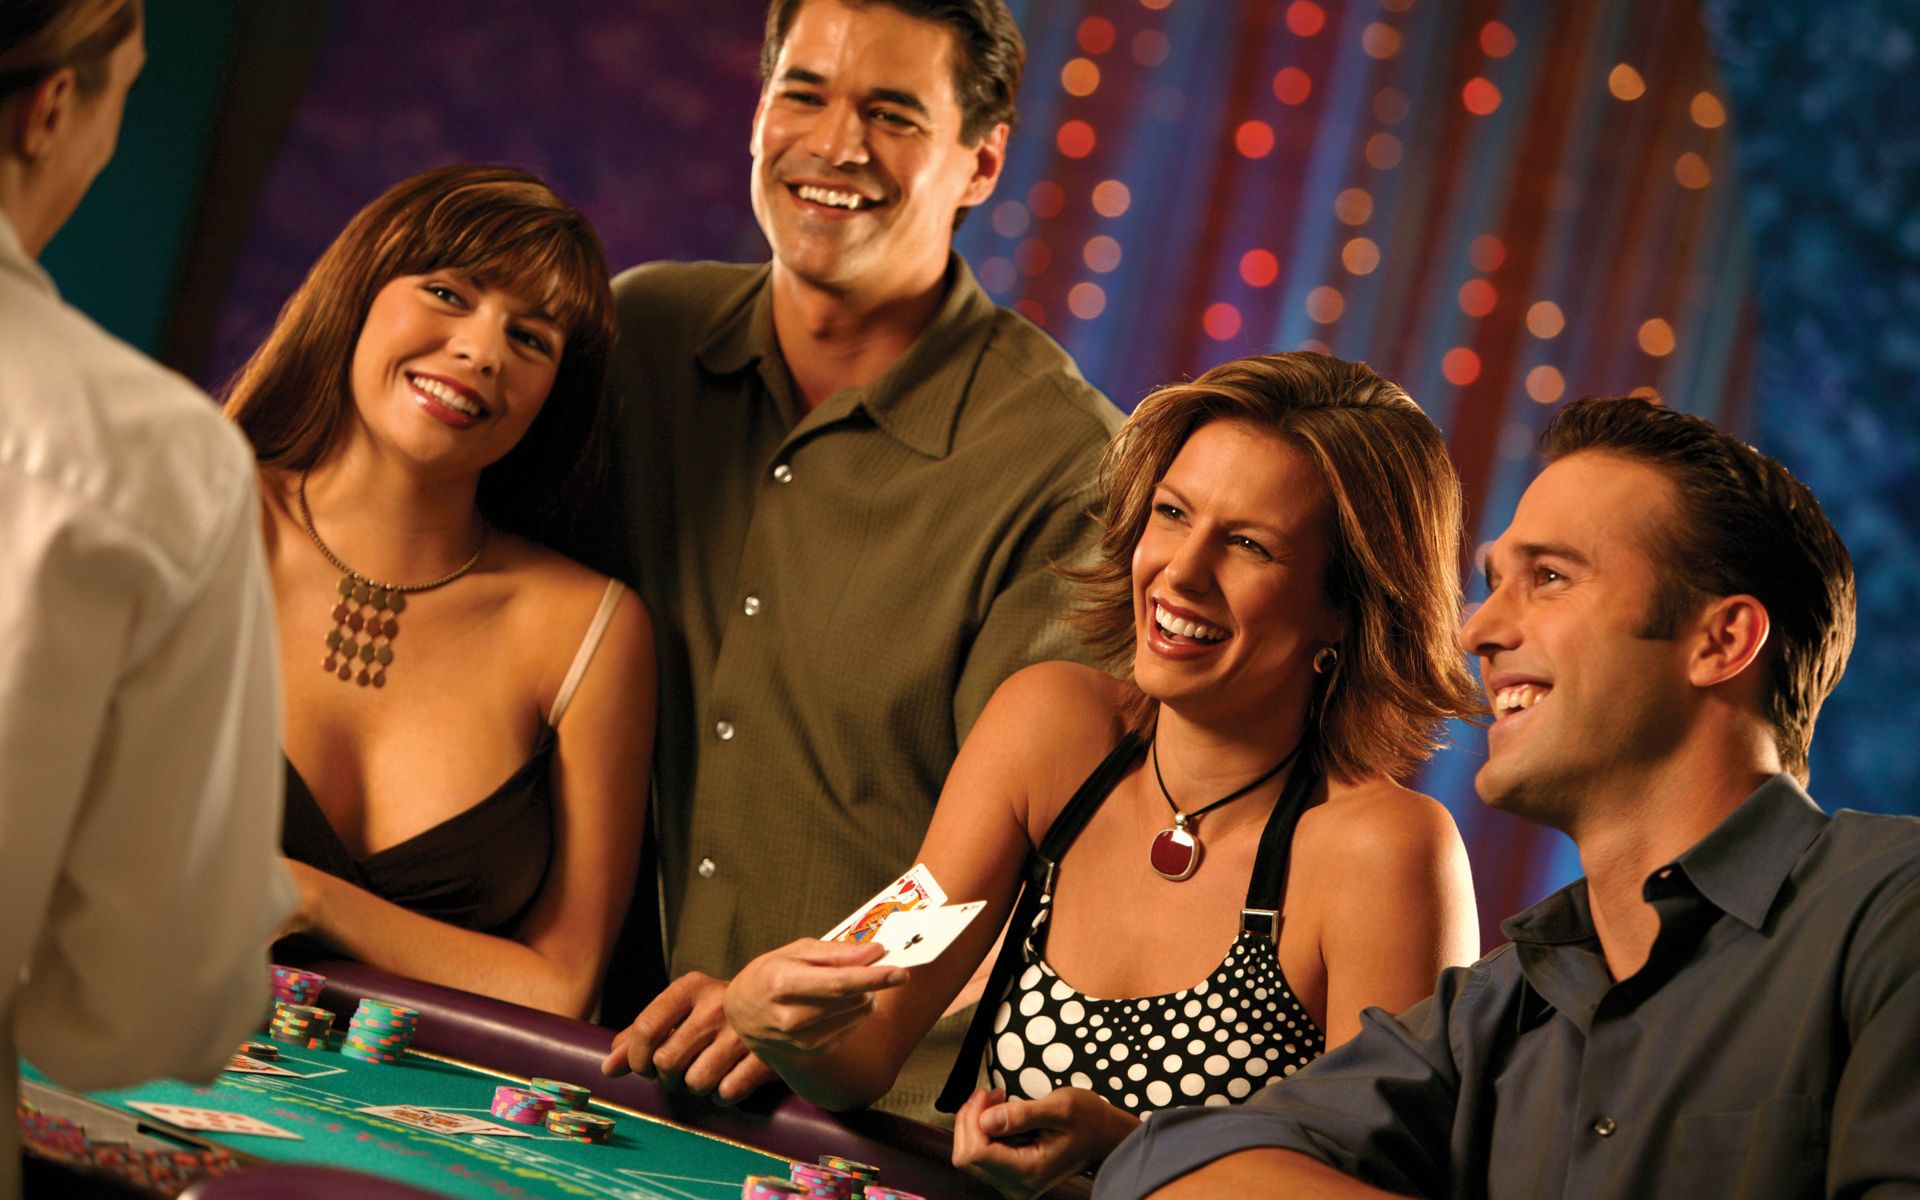 Friends casino 123 com. Мужчина в казино. Счастливые люди в казино. Азарт эмоция. Игрок в рулетку.